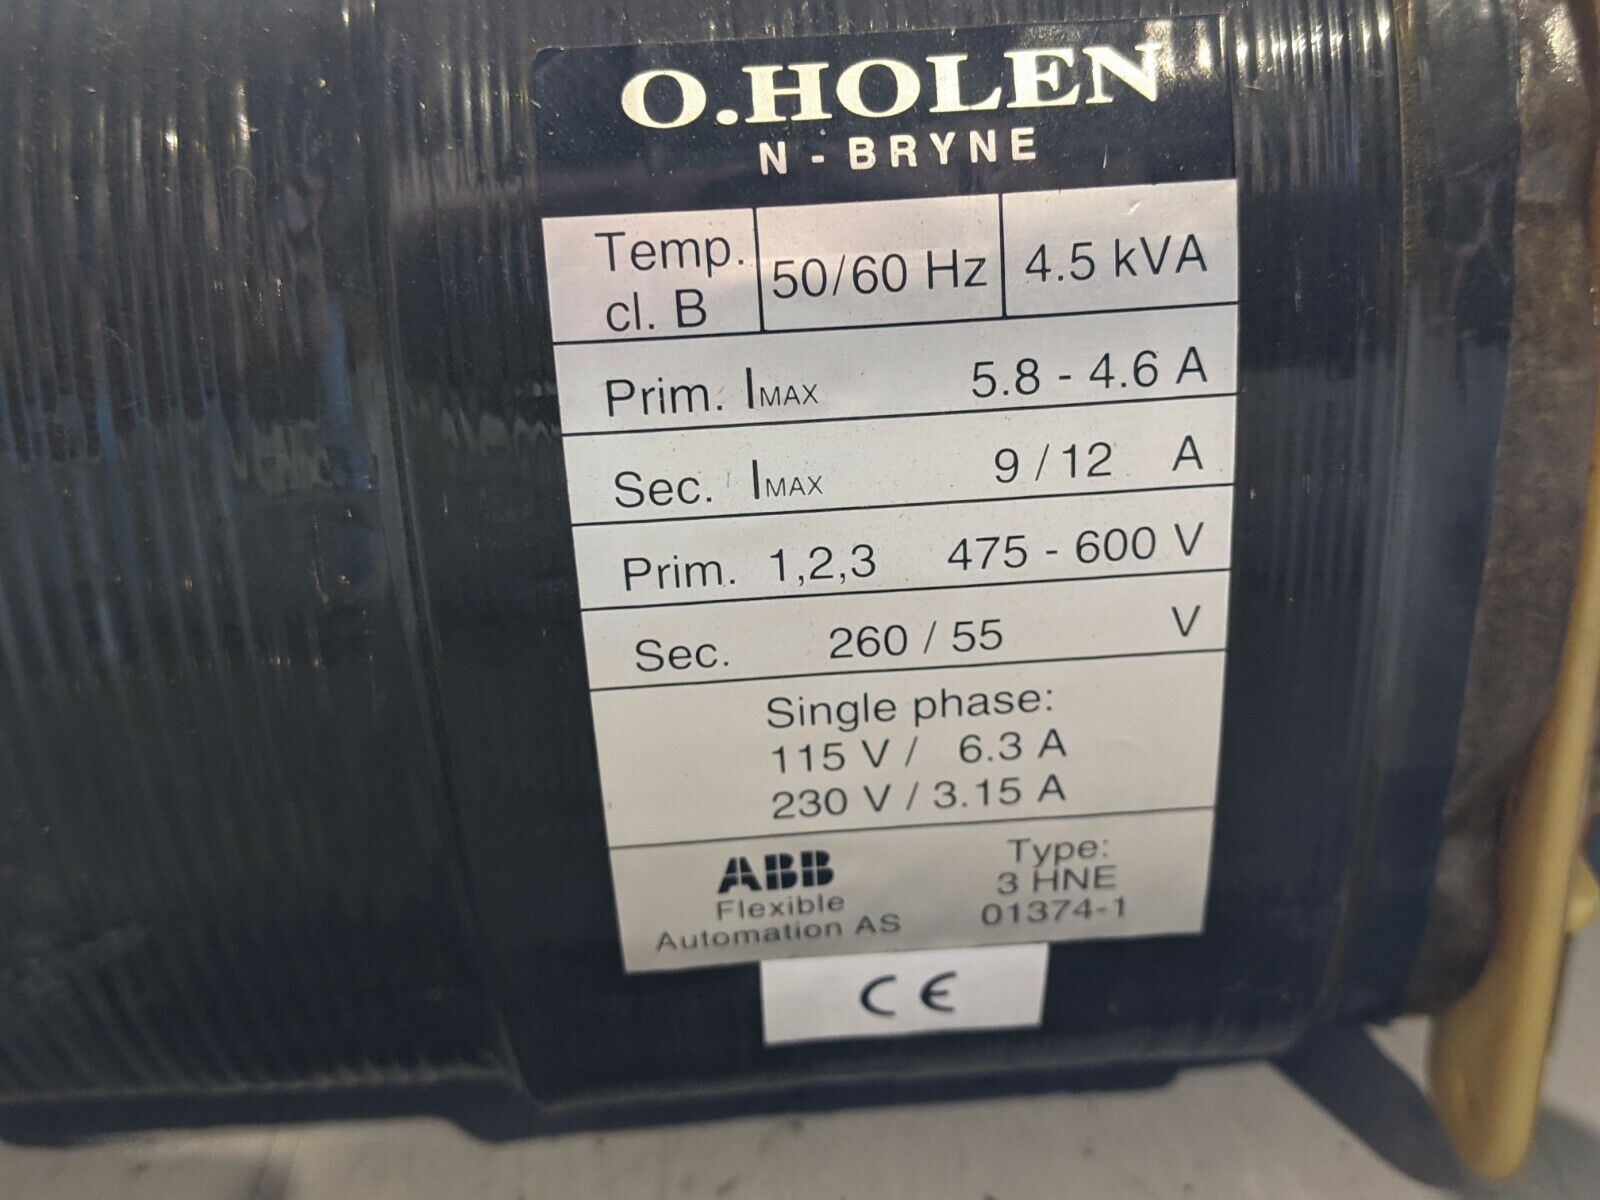 O. Holen ABB 3 HNE 01374-1 Transformer 475-600V Primary, 260/55V Secondary